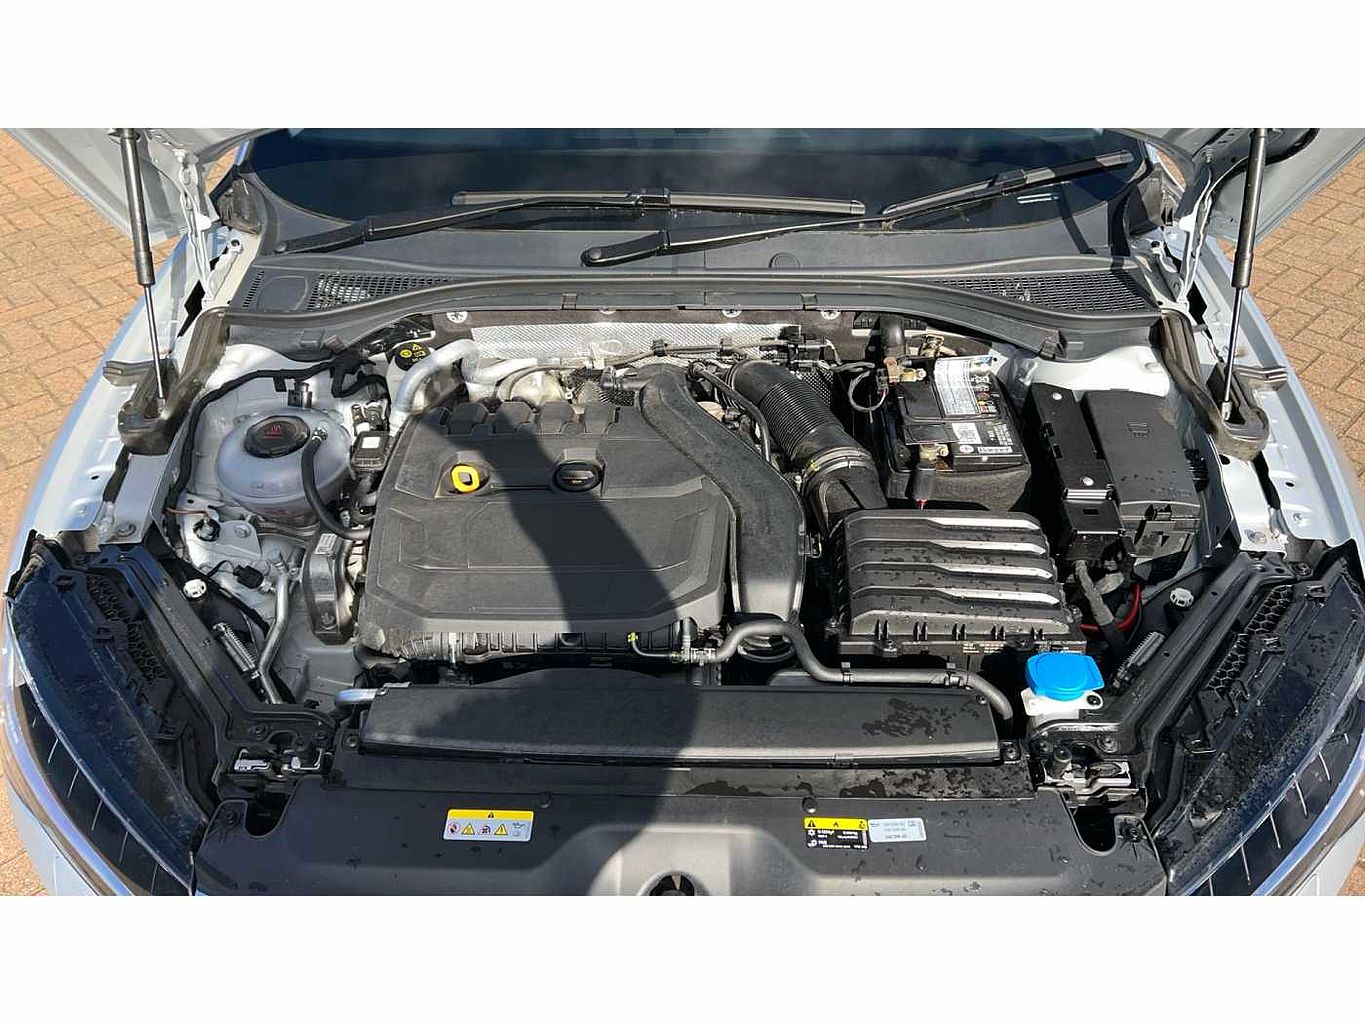 SKODA Superb 1.5 TSI (150ps) SE L ACT 5Dr Hatchback